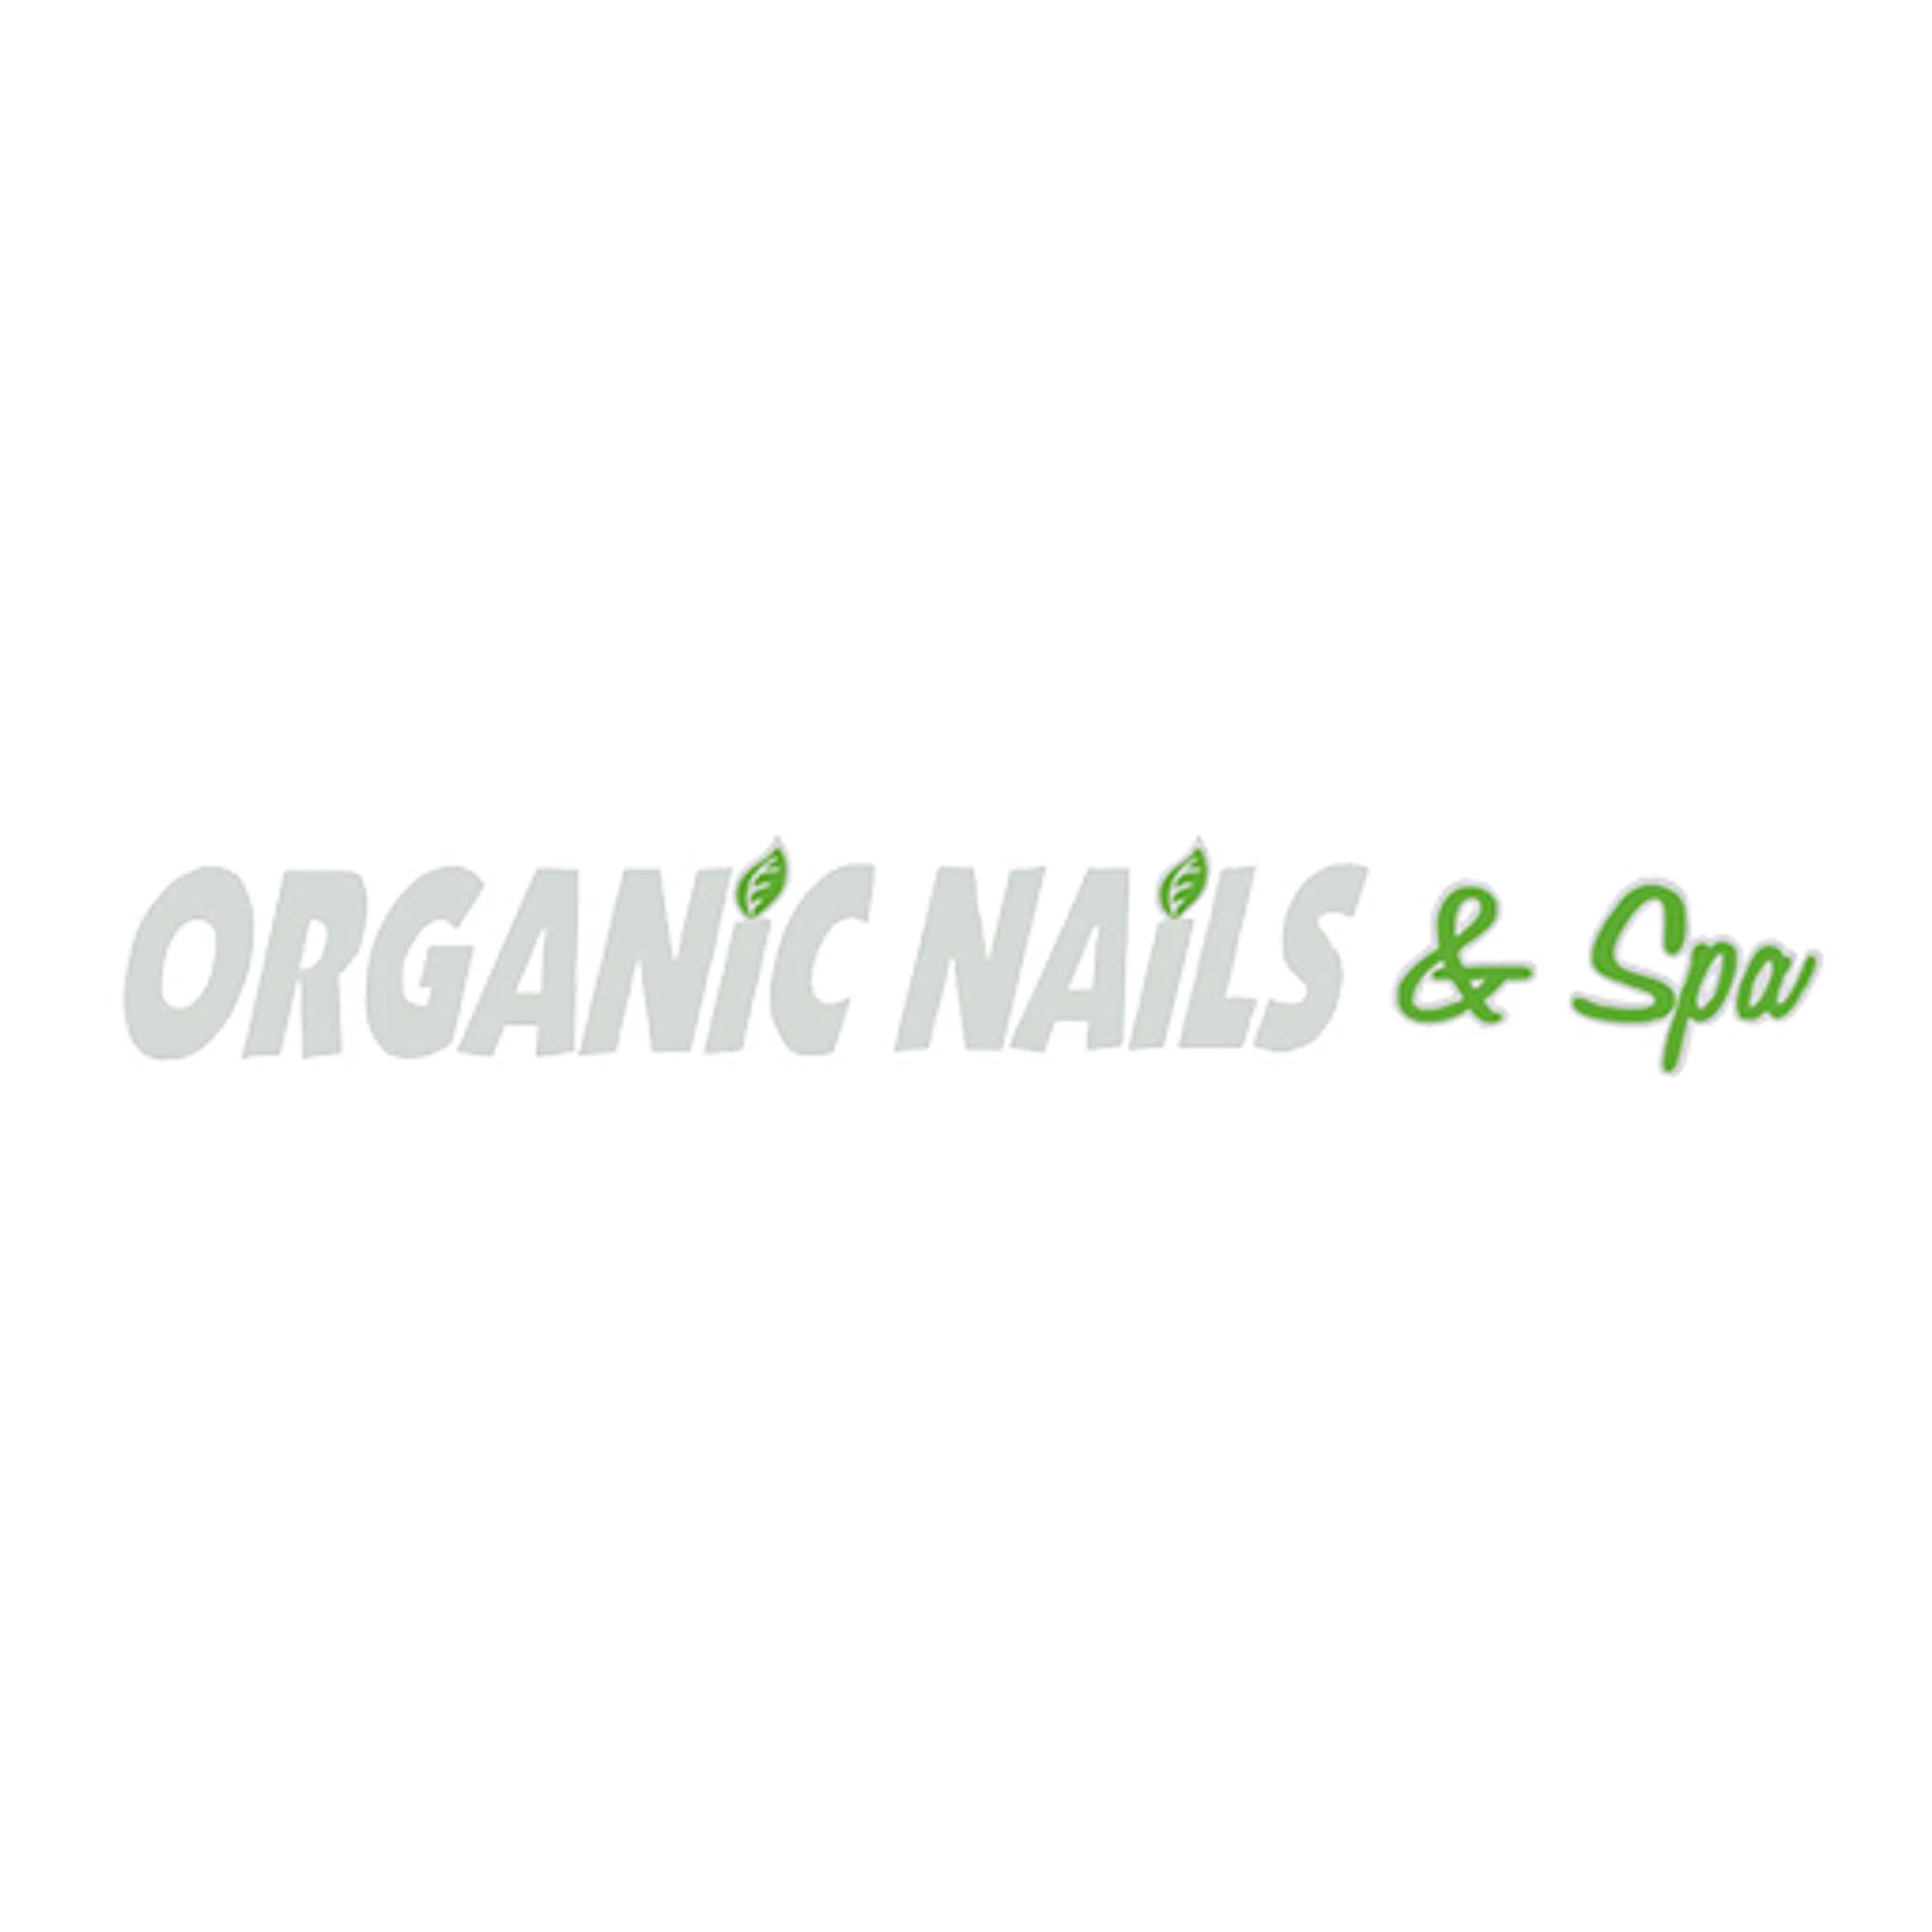 Organic Nails & Spa